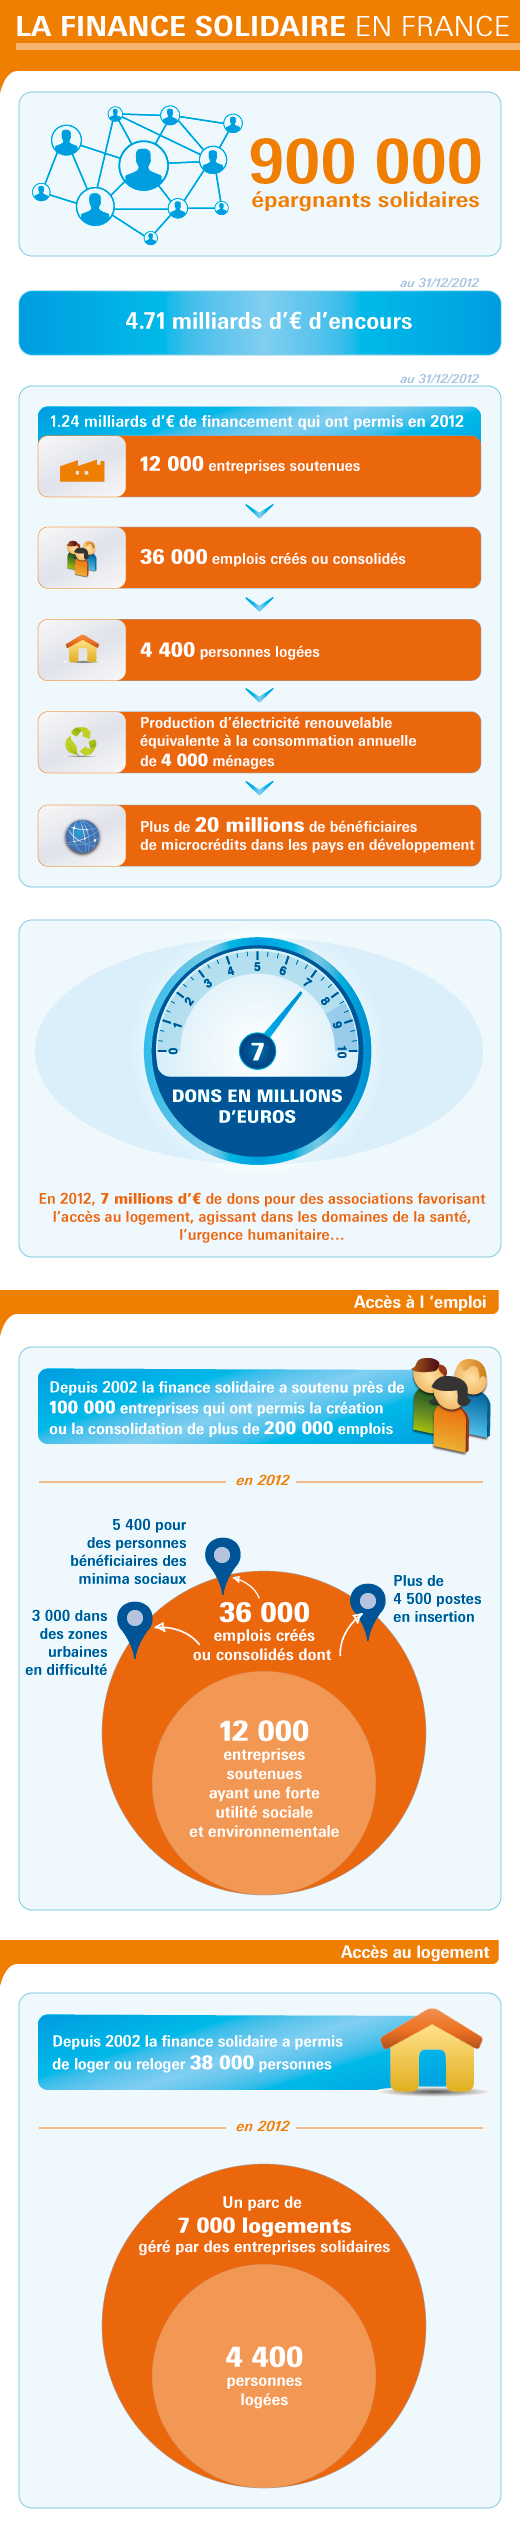 Infographie : La Finance solidaire en France 2013